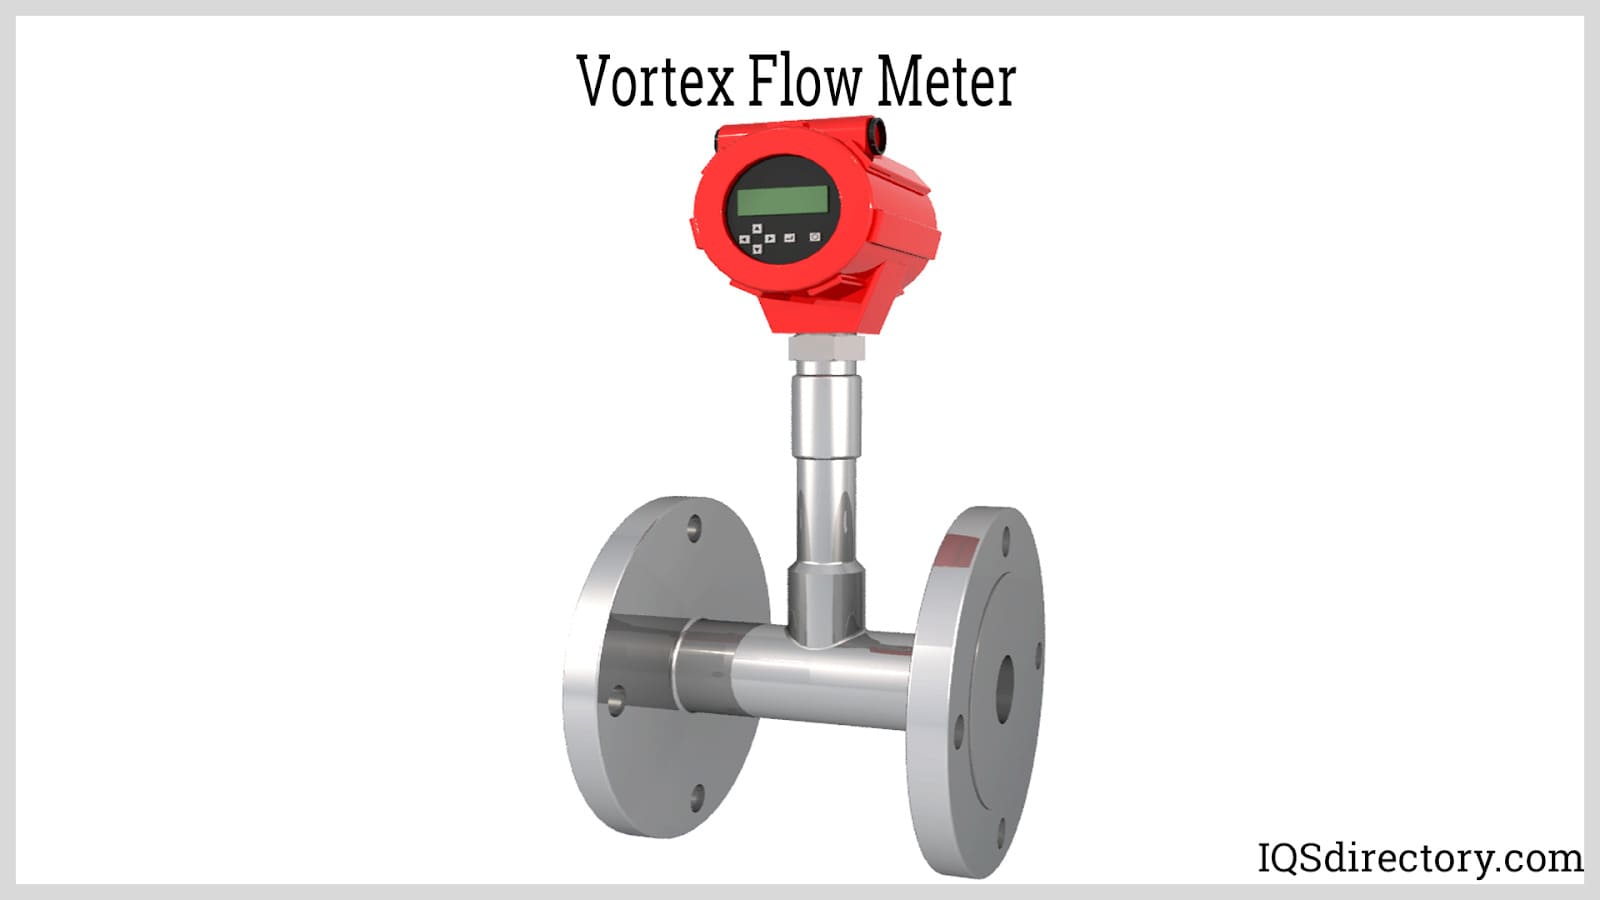 Vortex Flow Meter